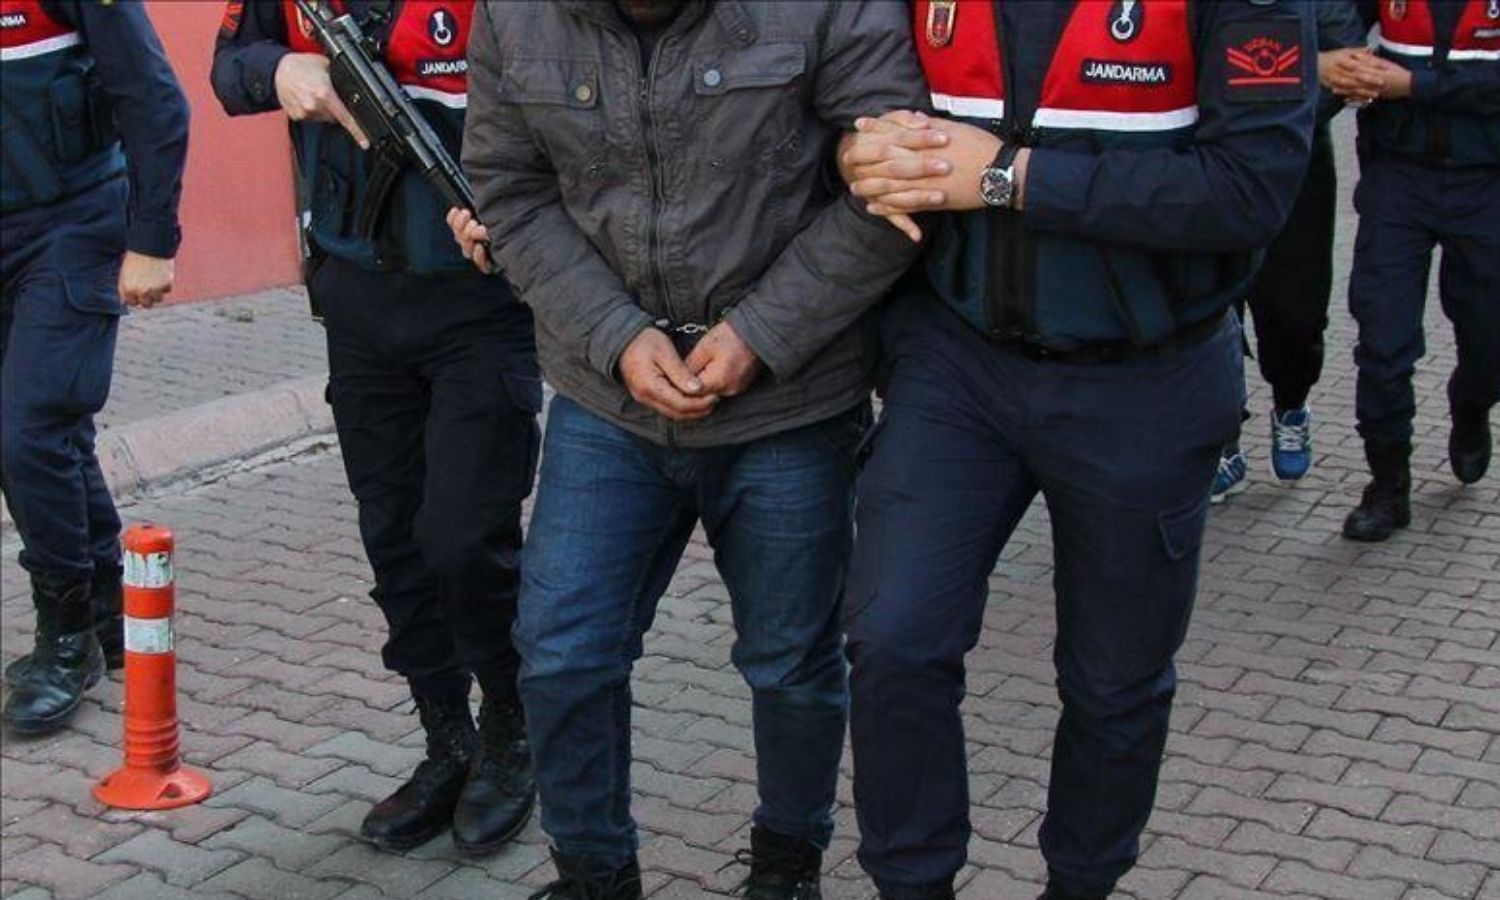 السلطات التركية تطلق سراح مواطن من جنديرس وتُبقي الآخر قيد الاعتقال في إسطنبول